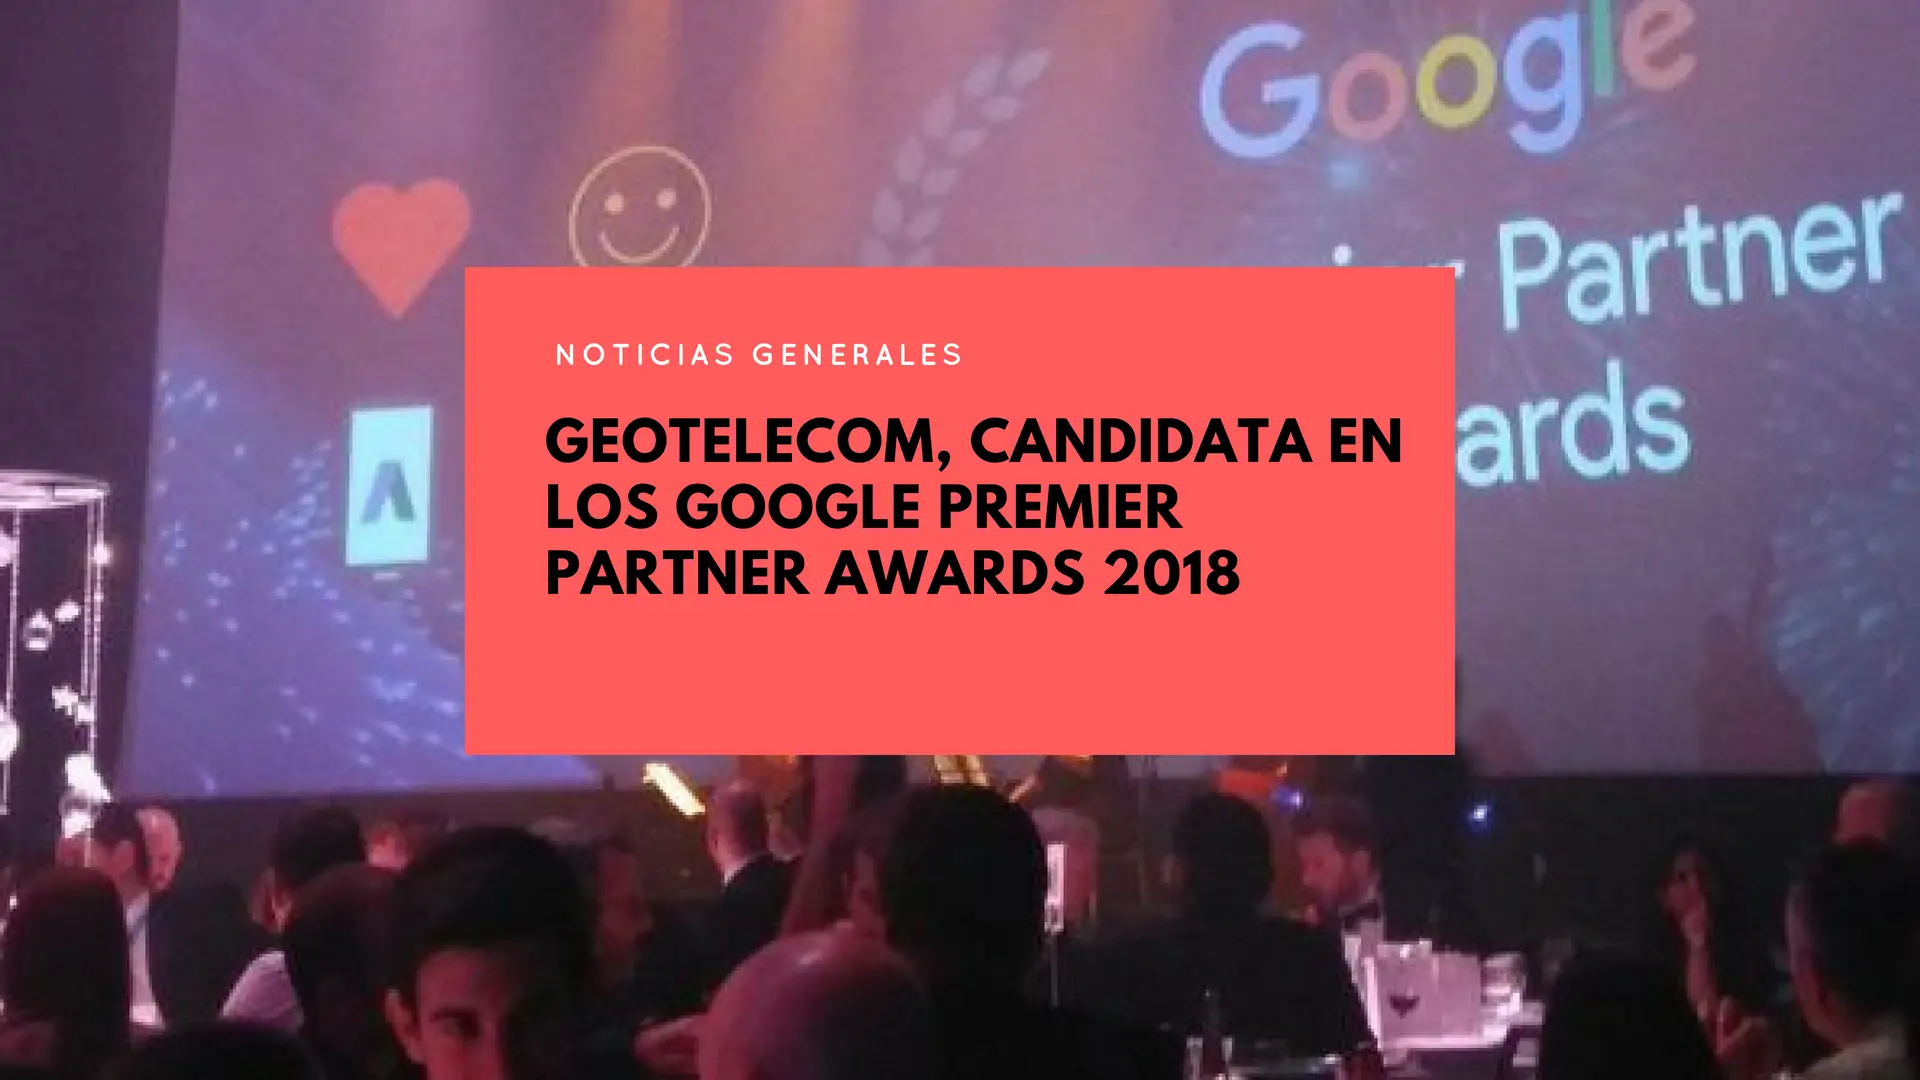 Google Premier Partner Awards 2018, here we come!